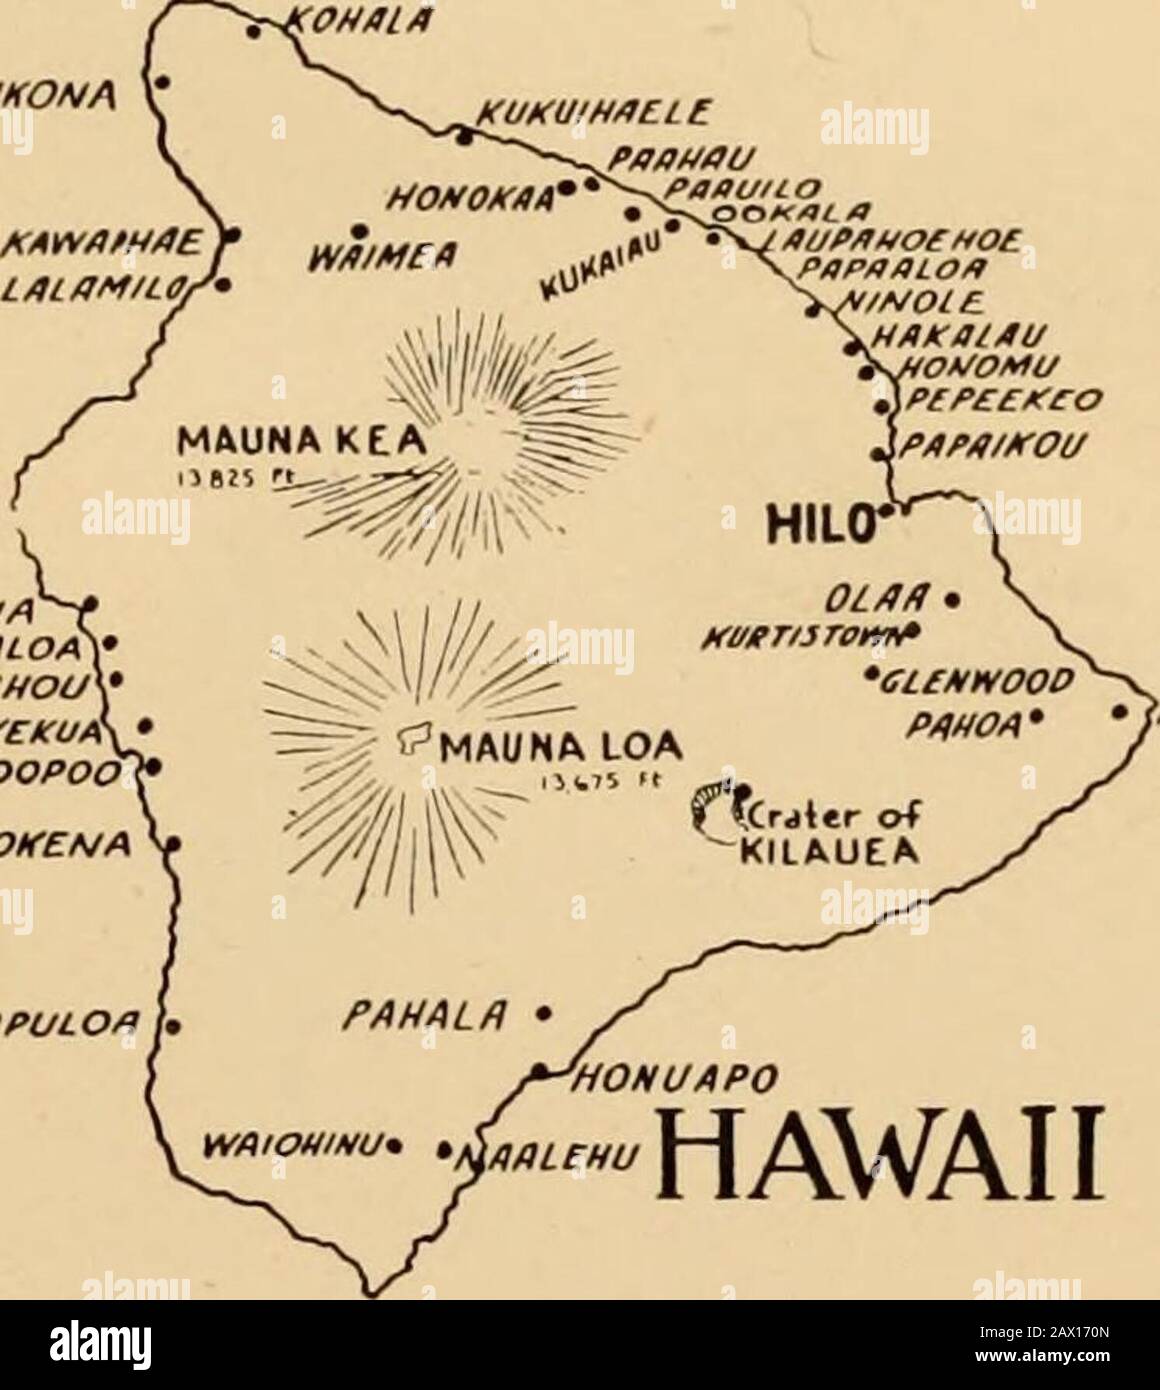 Die Pilger von Hawaii; ihre eigene Geschichte über ihre Pilgerreise aus Neuengland und ihr Lebenswerk auf den Sandwichinseln, die heute als Hawaii bekannt sind; . WAioumu. WHLEhuWP^^P^J^ DIE HAWAIIANISCHEN INSELN Die Gruppe liegt zwischen 18 Grad. 54 Min. Und 22 Grad 14 Min. Nördlich, 154 dcg. 48 Min. Und 160 Grad 13 Min. Westlich. Acht Inseln sind bewohnt. Hawaii ist das größte, 75 mal 90 Meilen. Fläche 4015 Quadratmeilen. Auf ihm befinden sich die Hochgebirge im Pazifik, zwei Gipfel erreichen eine Höhe von mehr als 13.000 Fuß. Hilo, die Stadt, ist die zweitbevölkerungsreichende Stadt auf dem Territorium. Maui hat 728 Quadratmeilen. Haleakala ist ein m Stockfoto